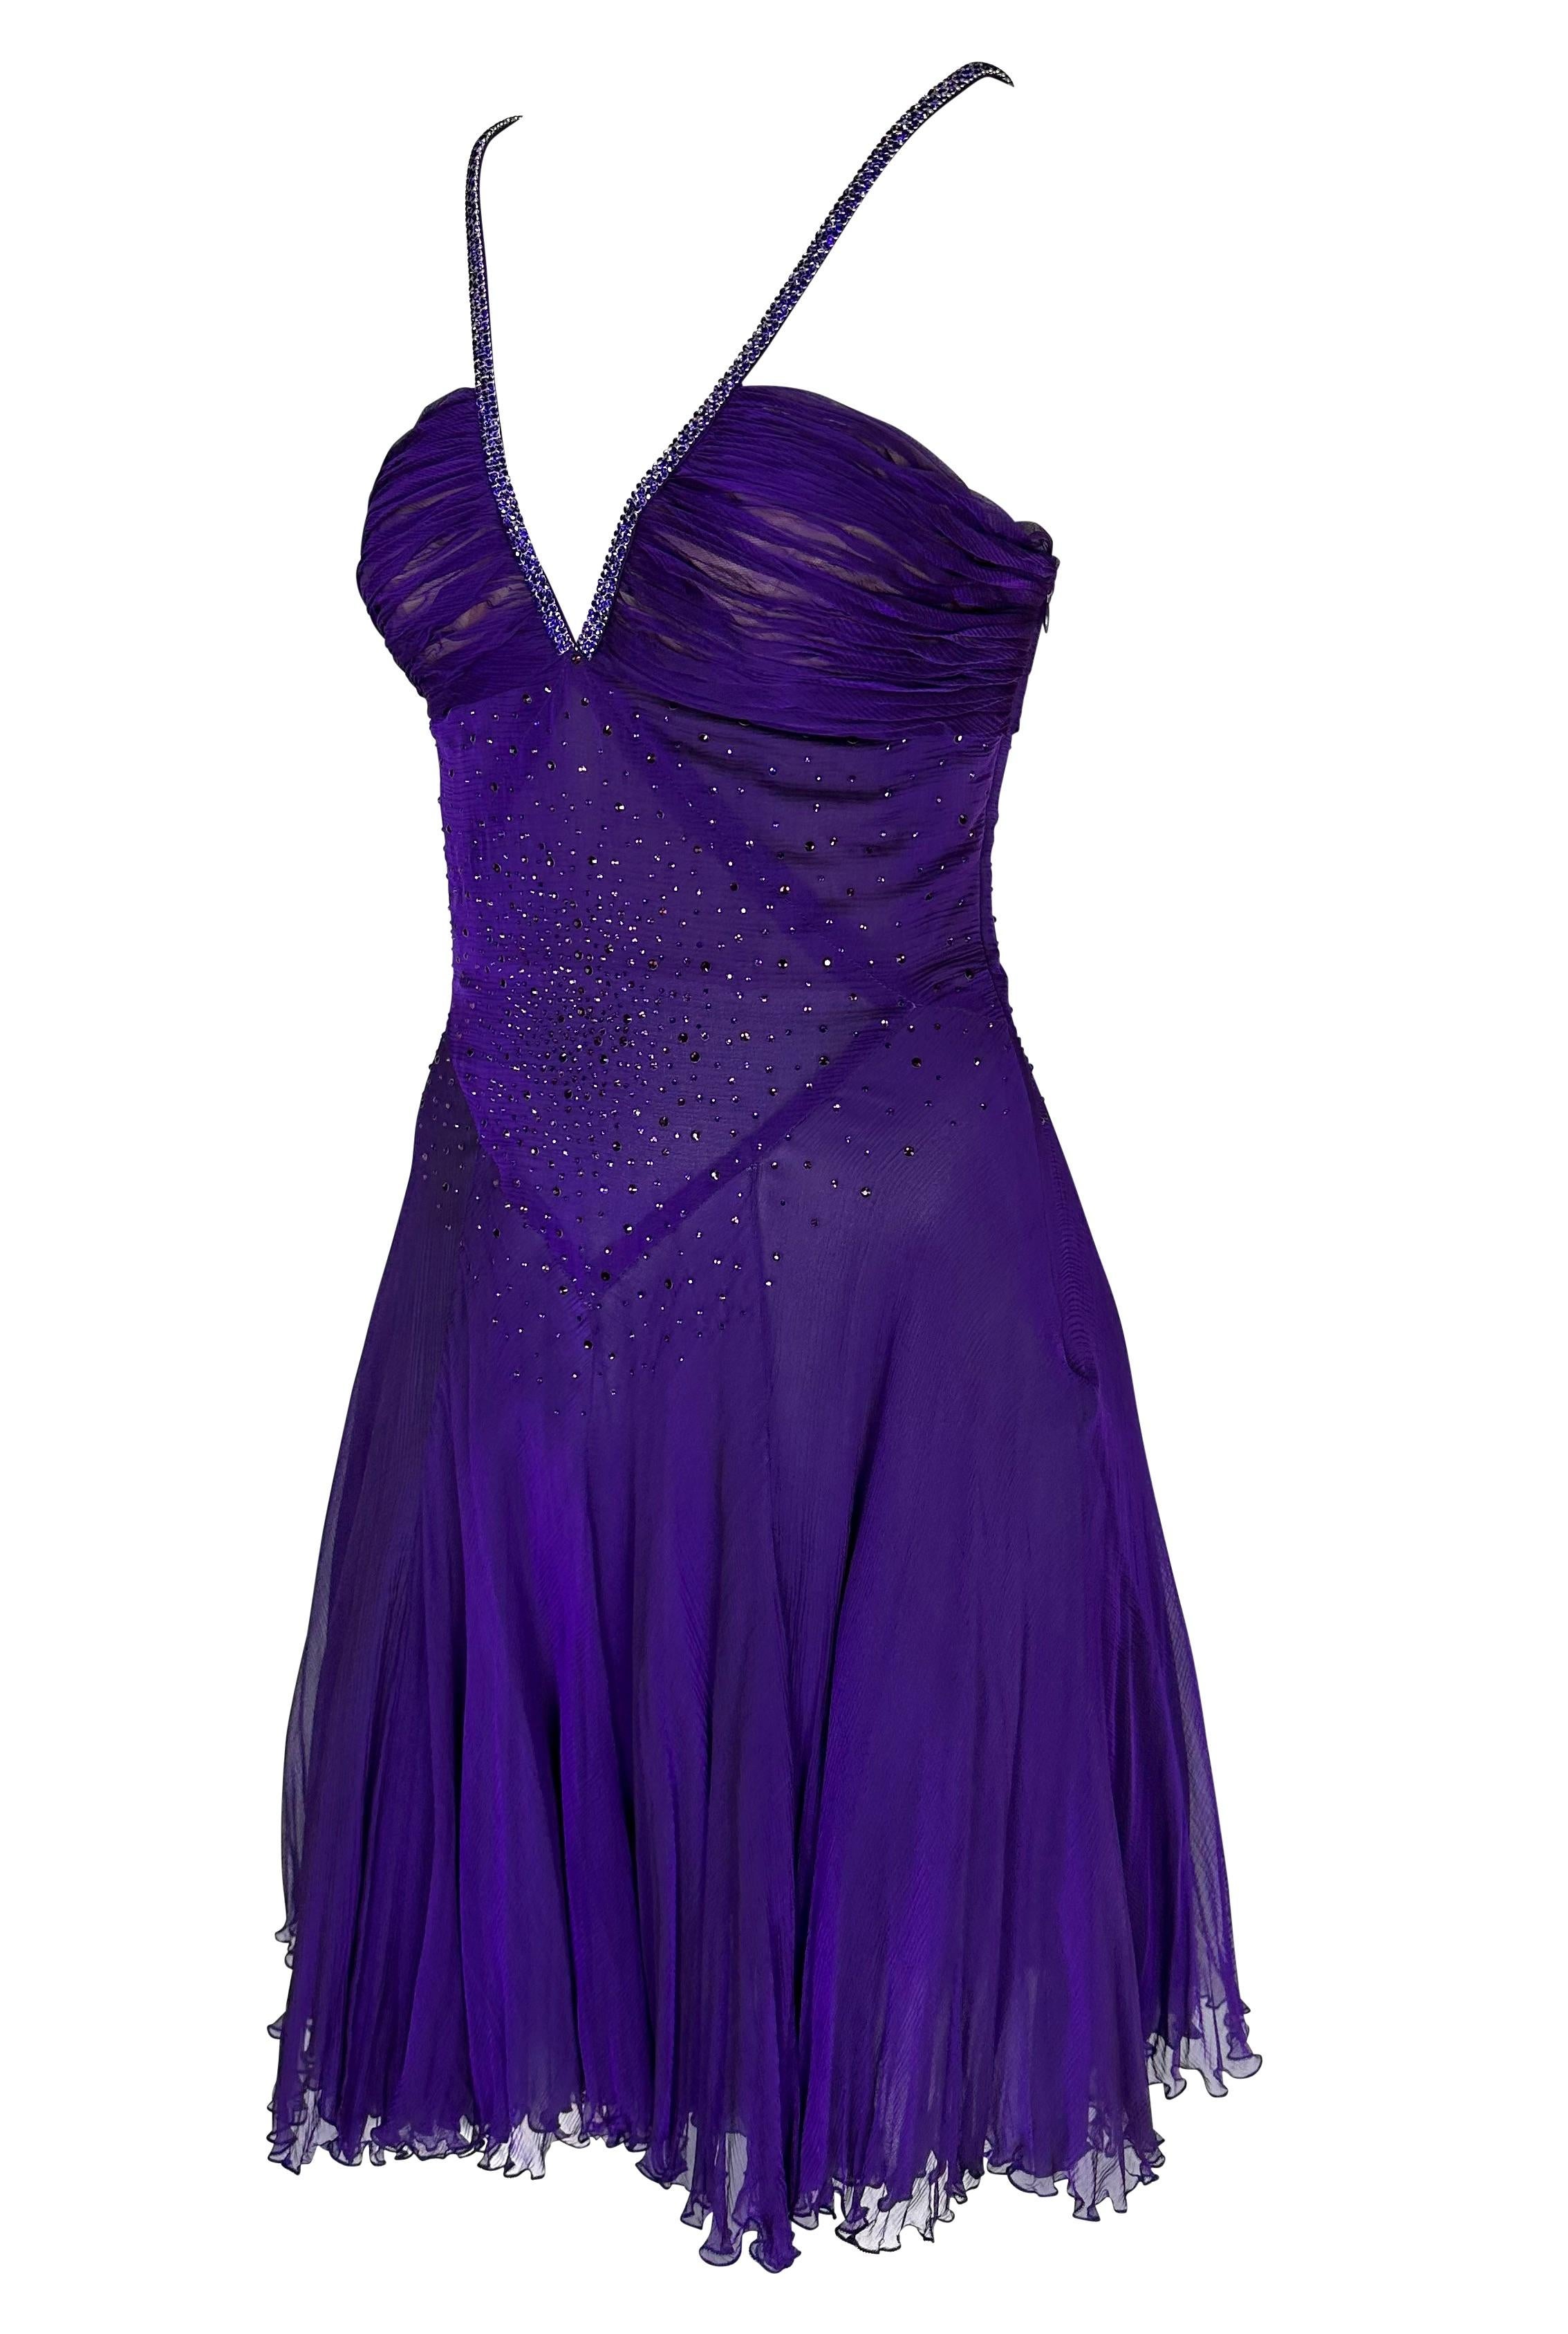 Voici une magnifique robe Versace d'un violet profond irisé, créée par Donatella Versace. Datant de la fin des années 2000, cette robe semi-transparente présente un décolleté en V profond, une jupe évasée, un dos semi-exposé et des bretelles